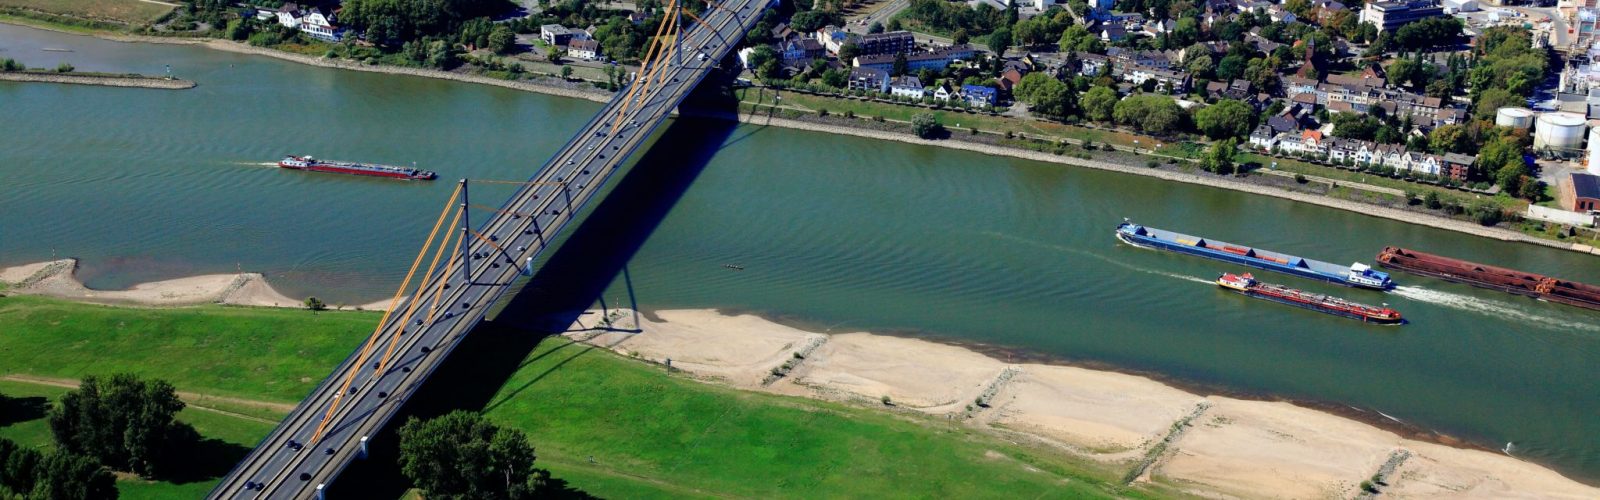 A40-Rheinbrücke